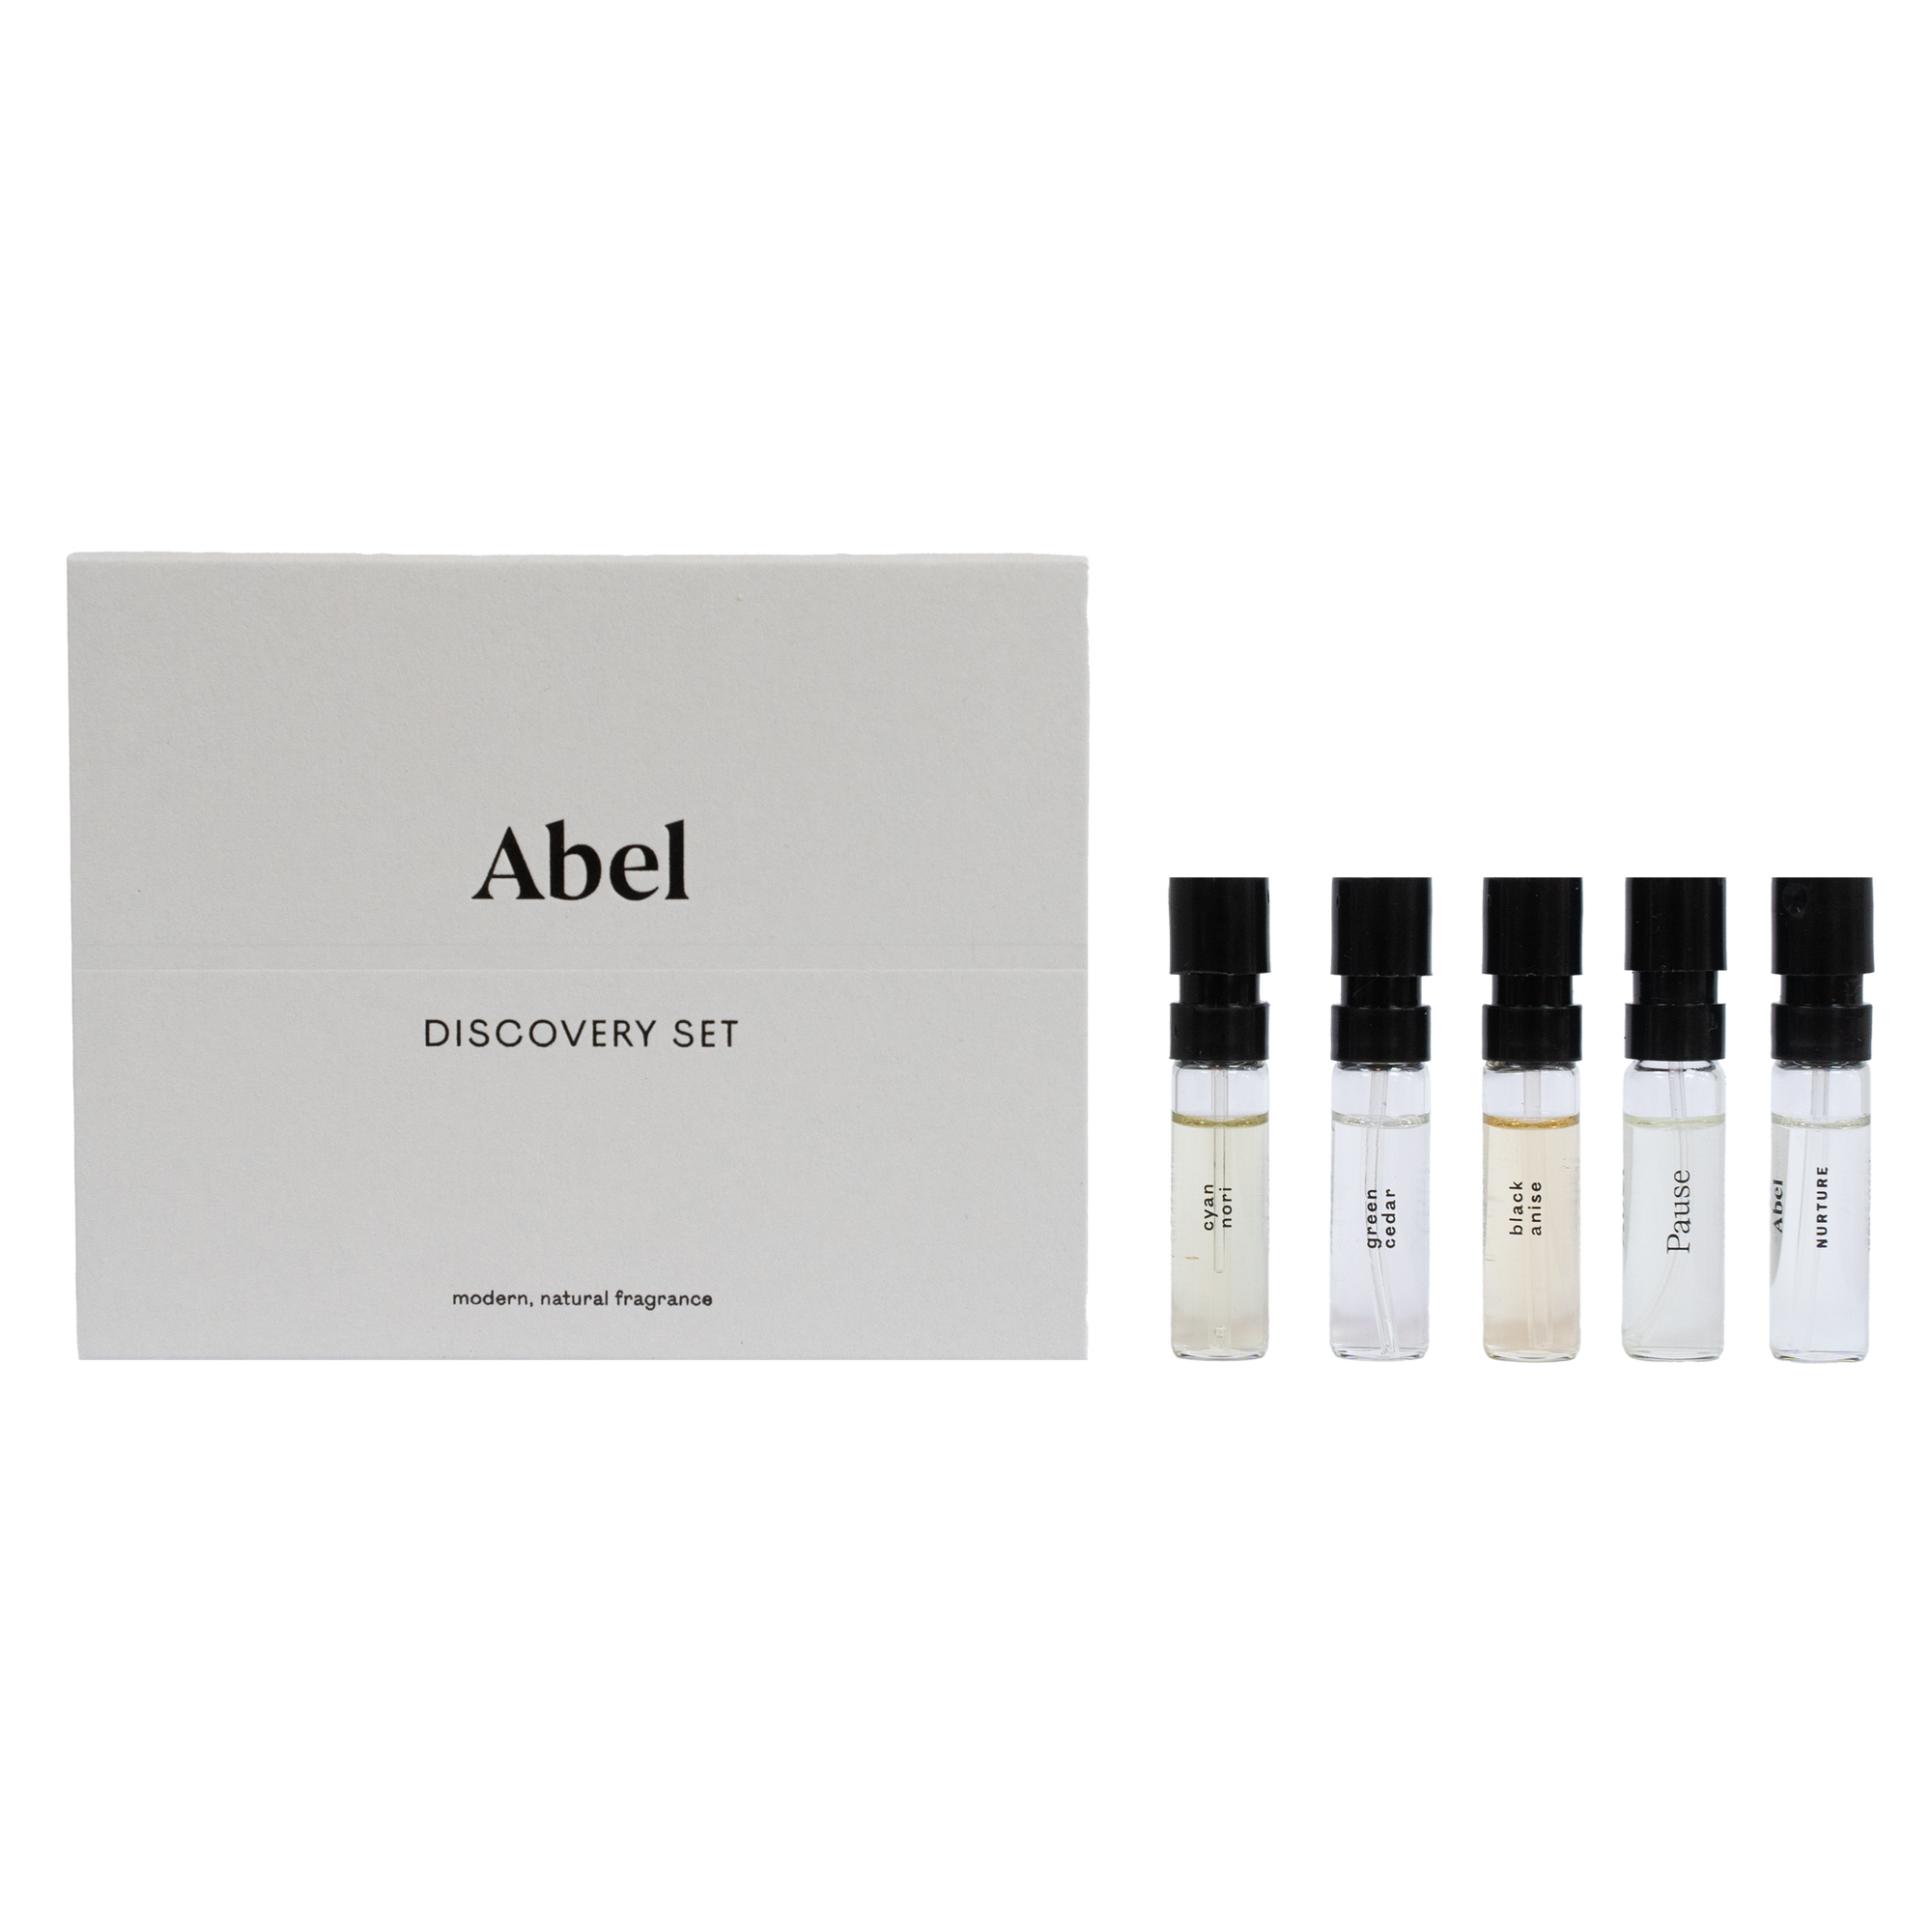 Abel 100% Natural eau de Parfum | Discovery Set (5x1ml)